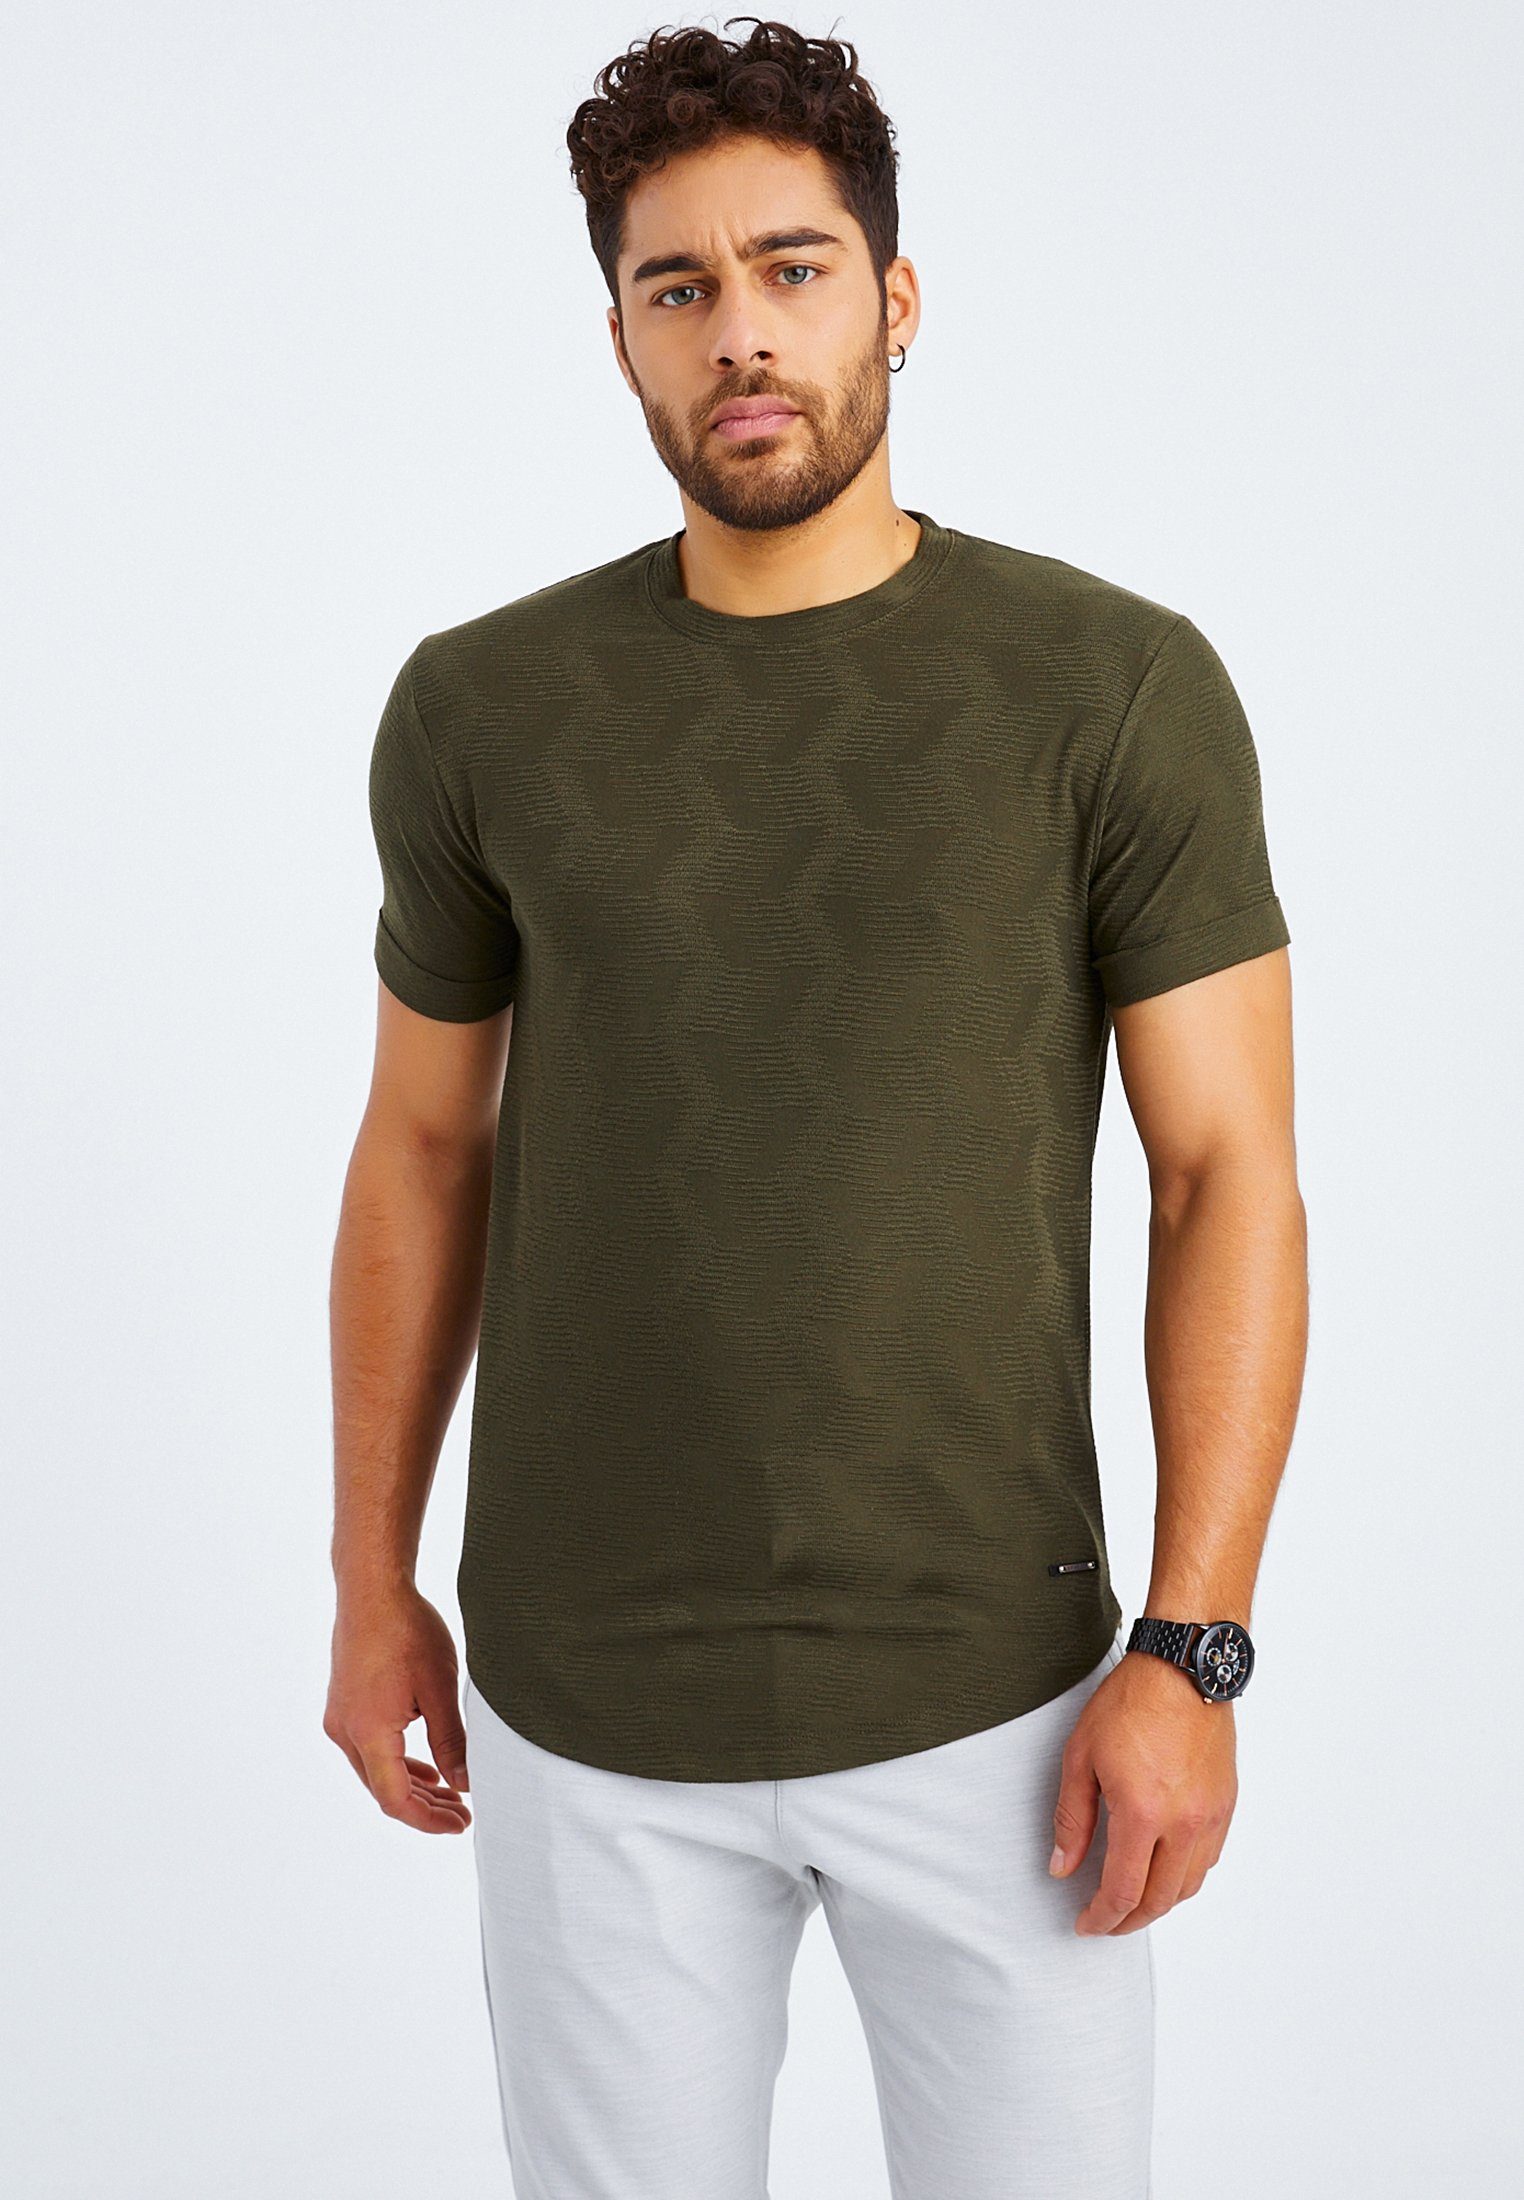 Leif Nelson T-Shirt Herren T-Shirt Rundhals LN-55585 normal khaki